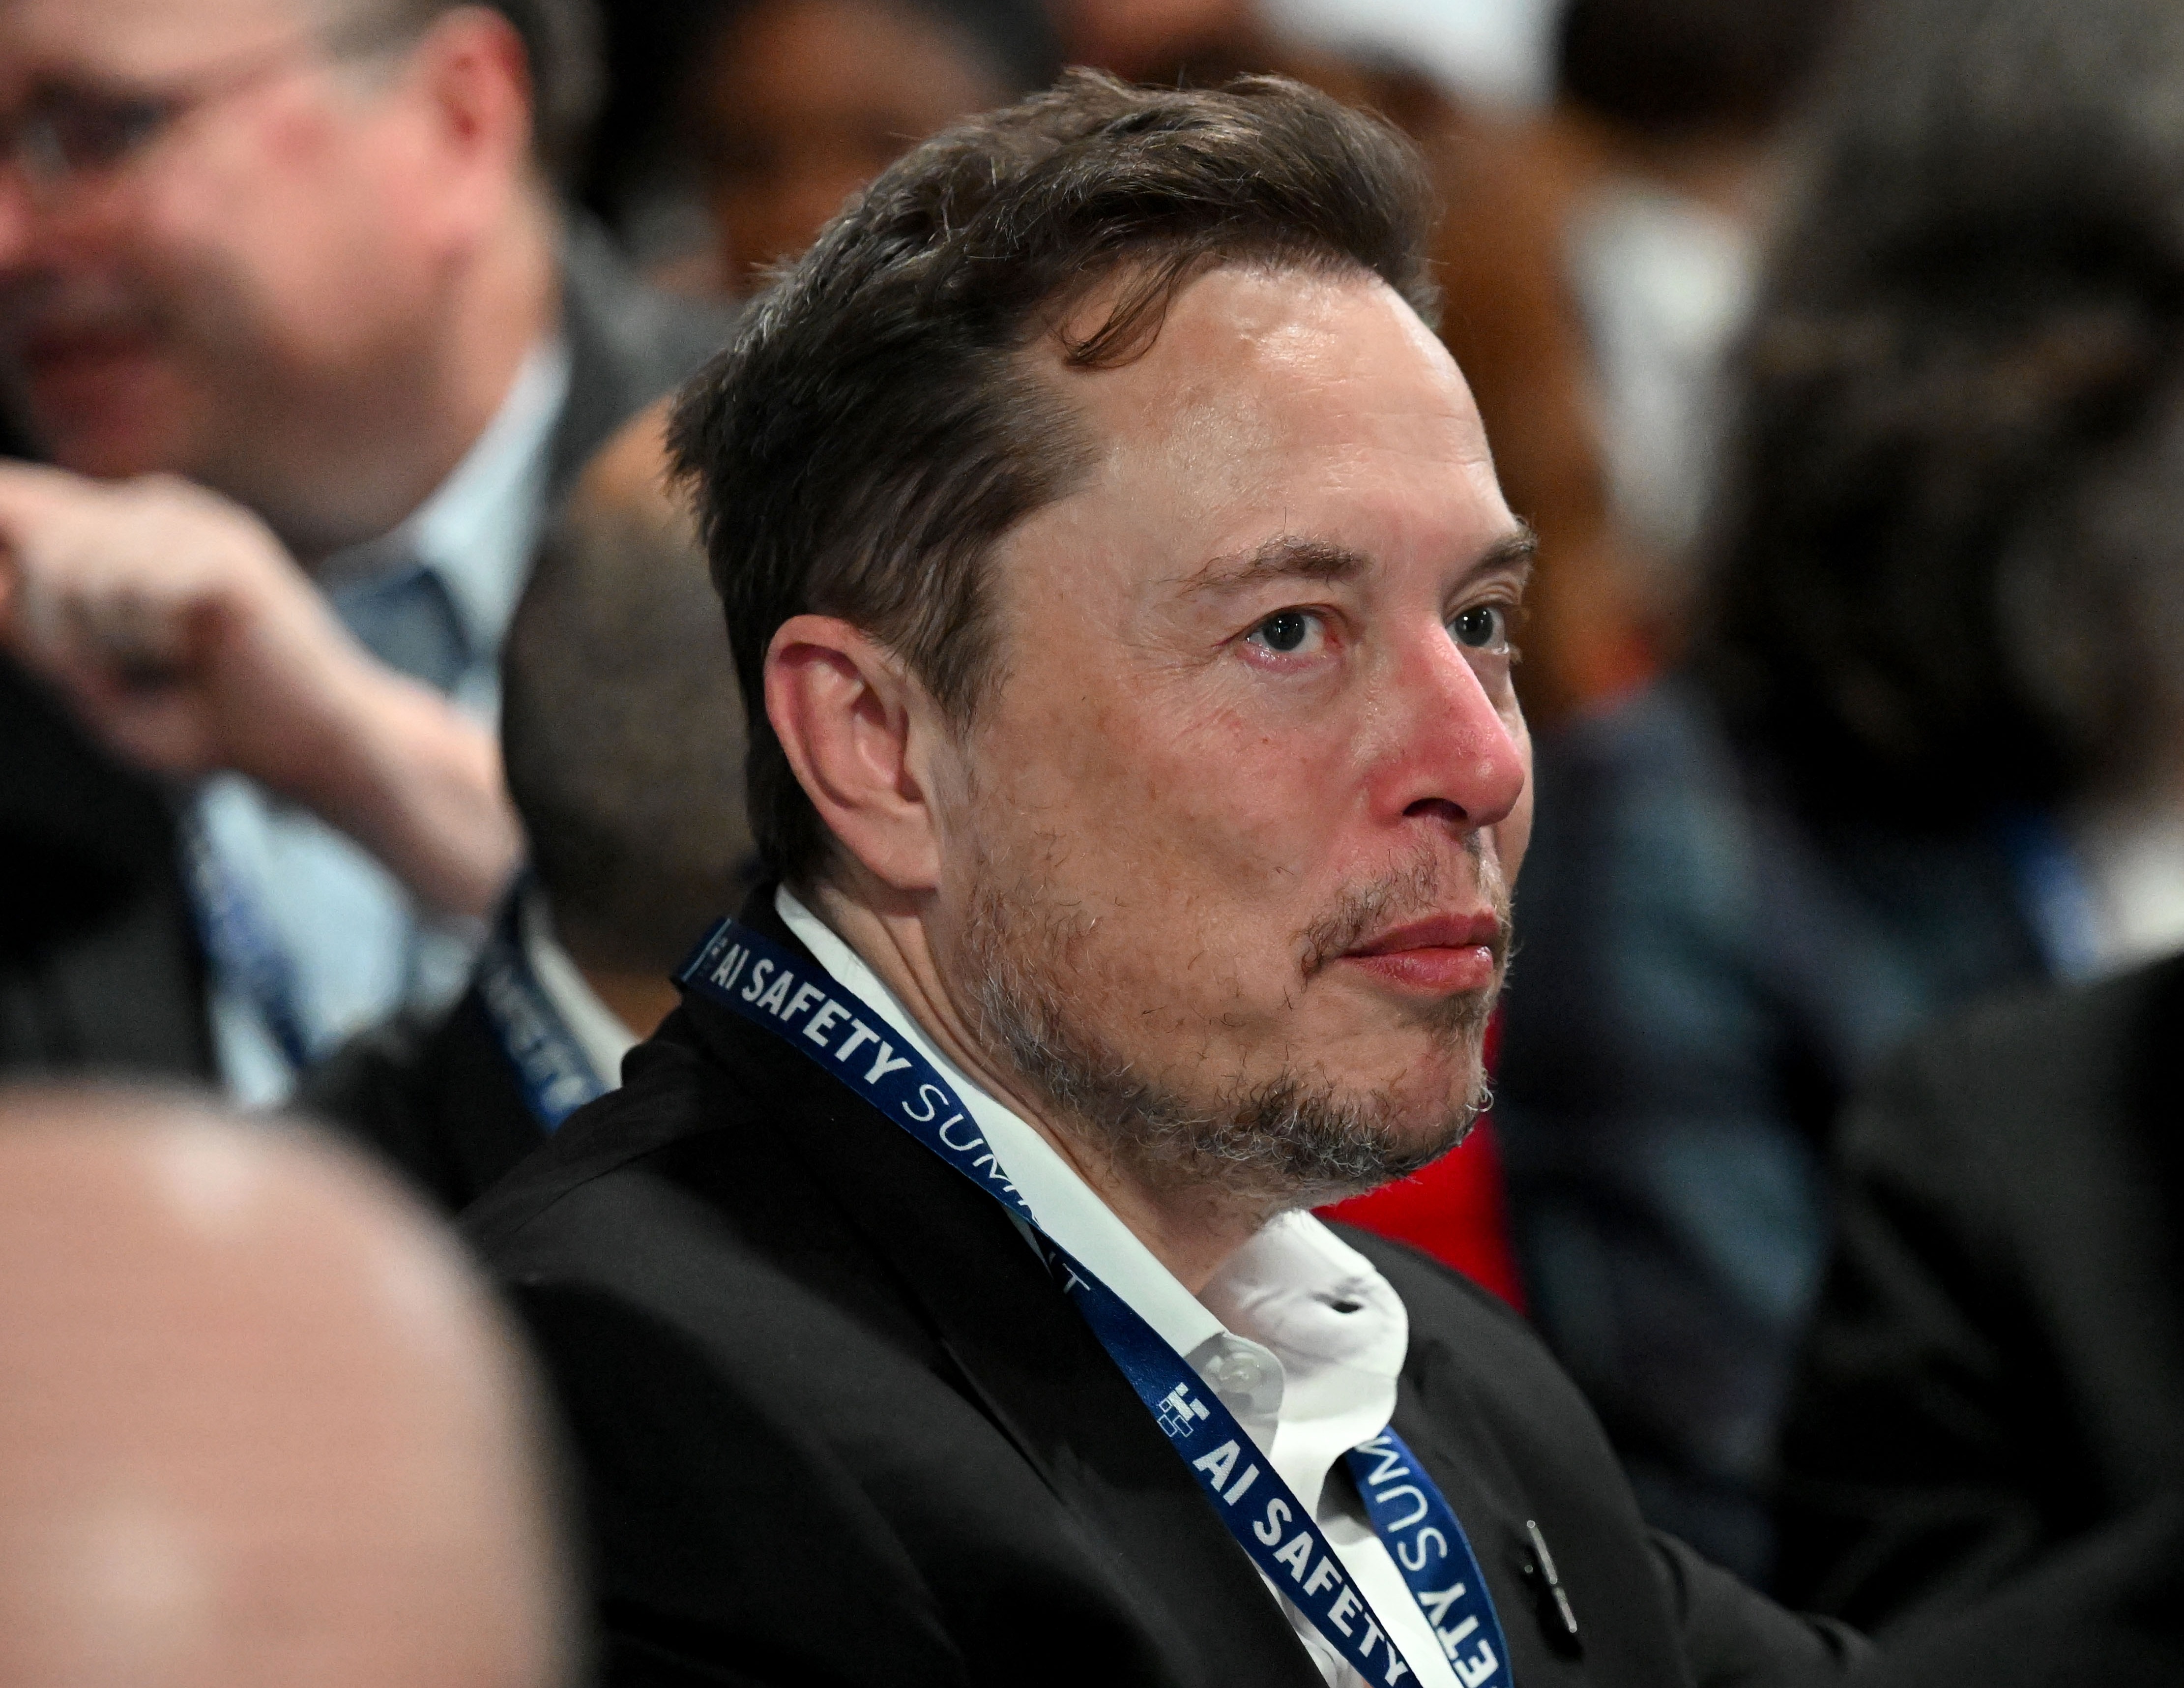 Der Milliardär Elon Musk untersucht mit seiner Firma Neuralink ein ähnliches Brainchip-Konzept